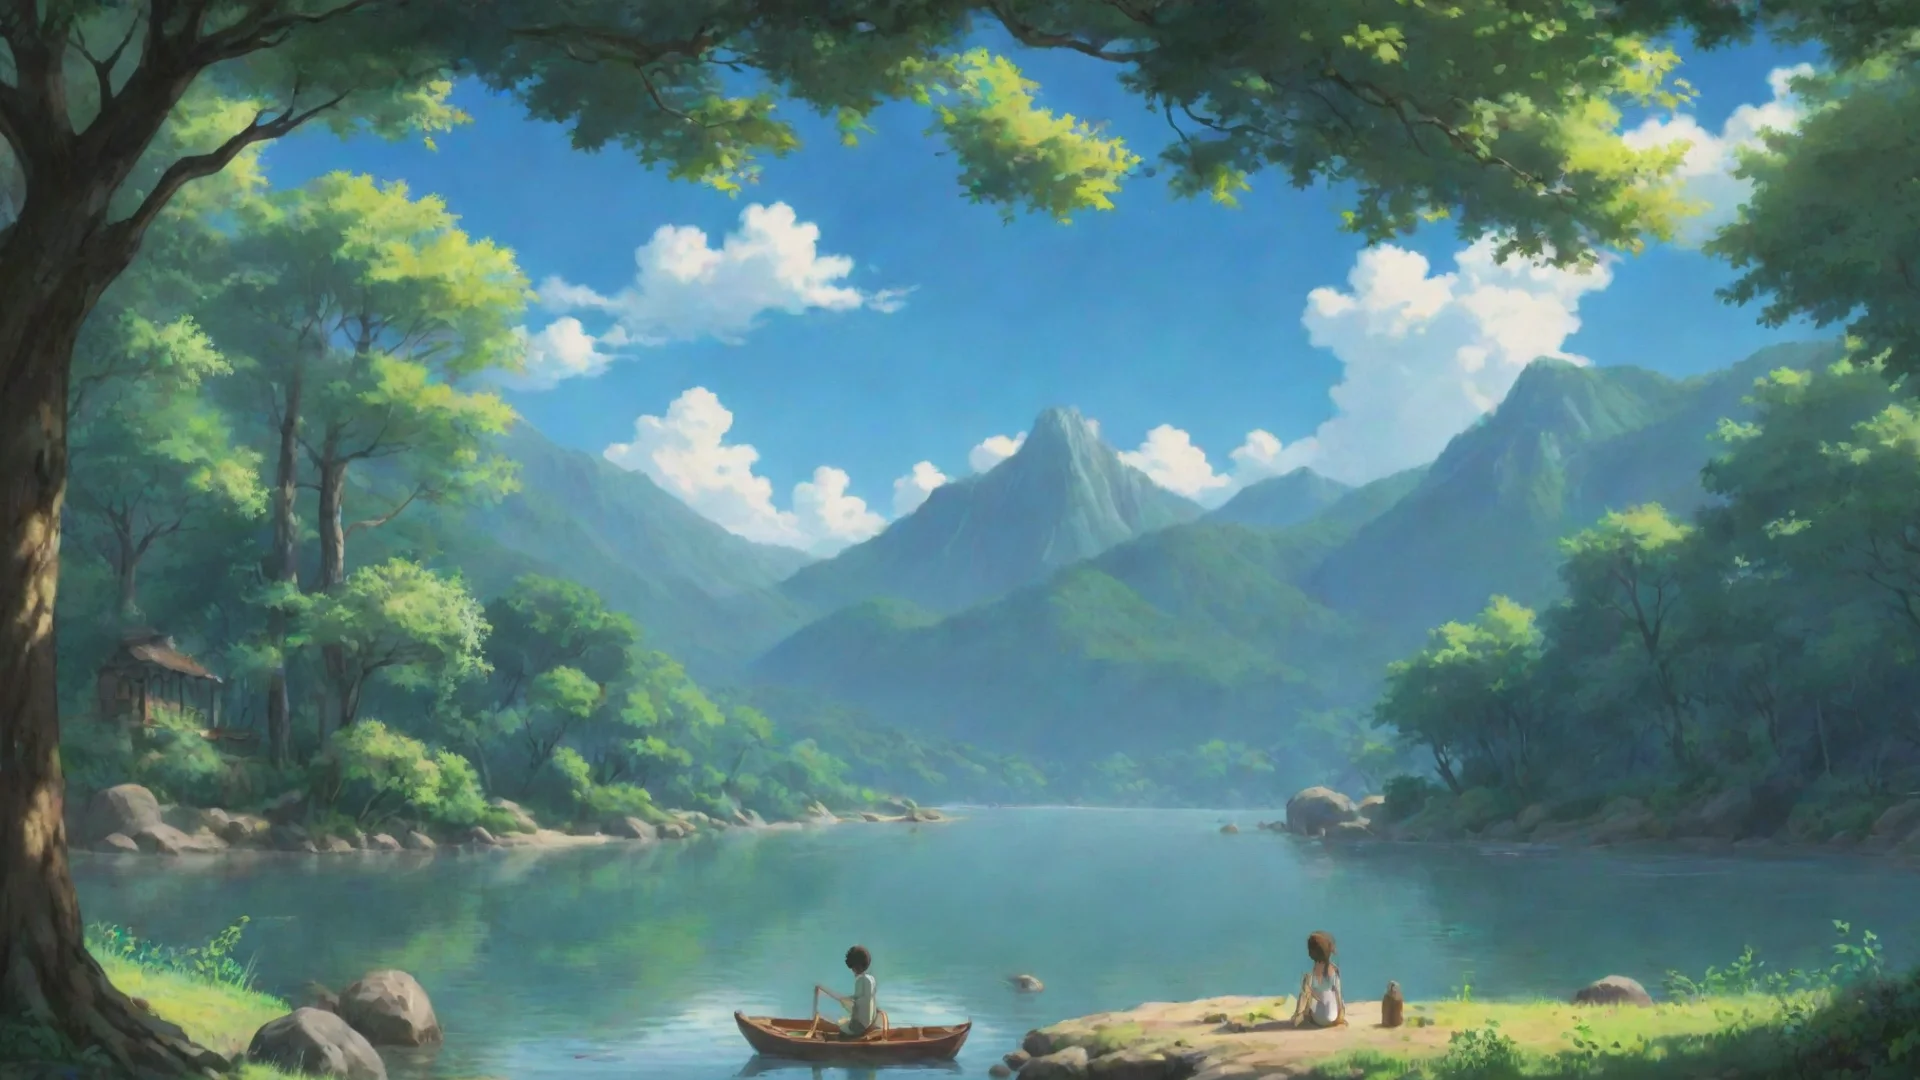 peaceful serene anime ghibli scene relax wide